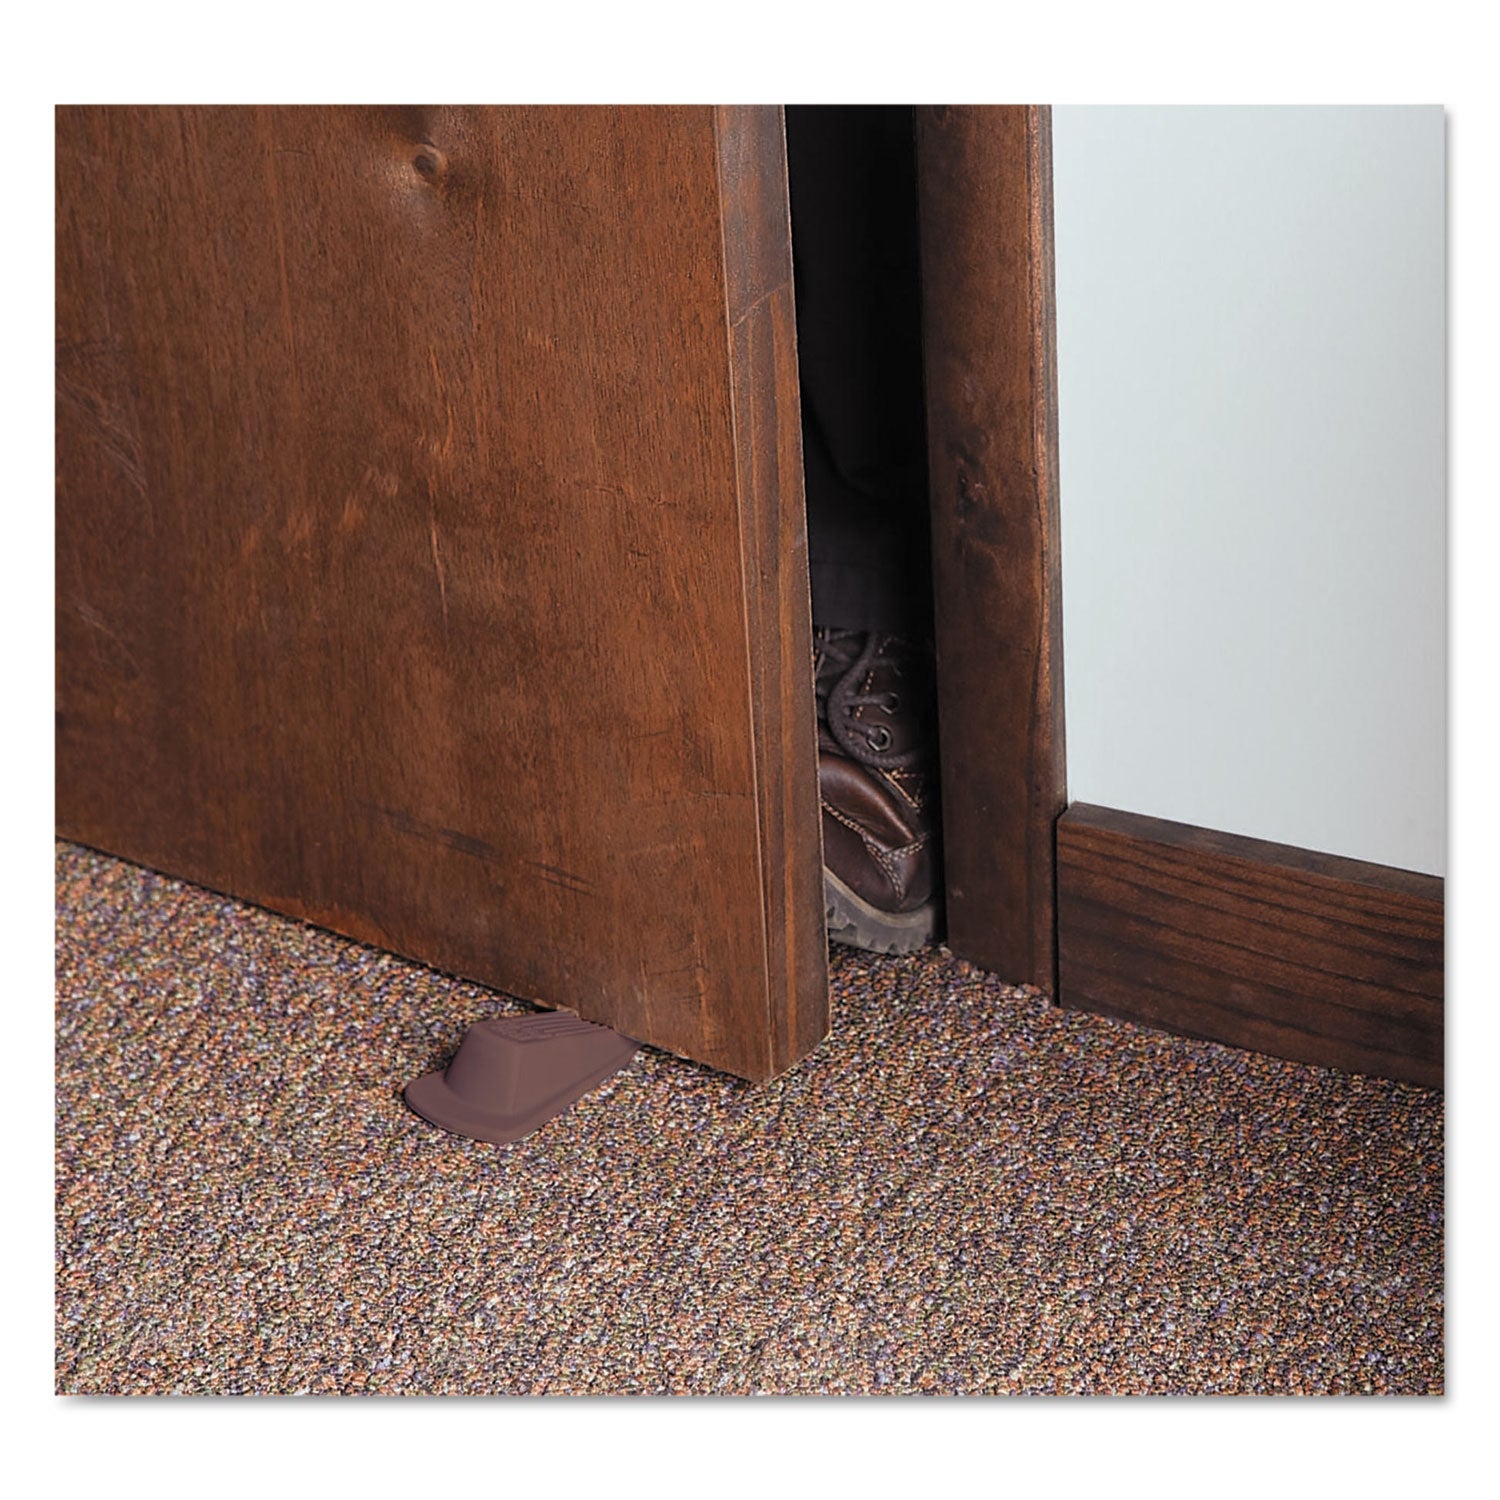 Big Foot Doorstop, No Slip Rubber Wedge, 2.25w x 4.75d x 1.25h, Brown - 